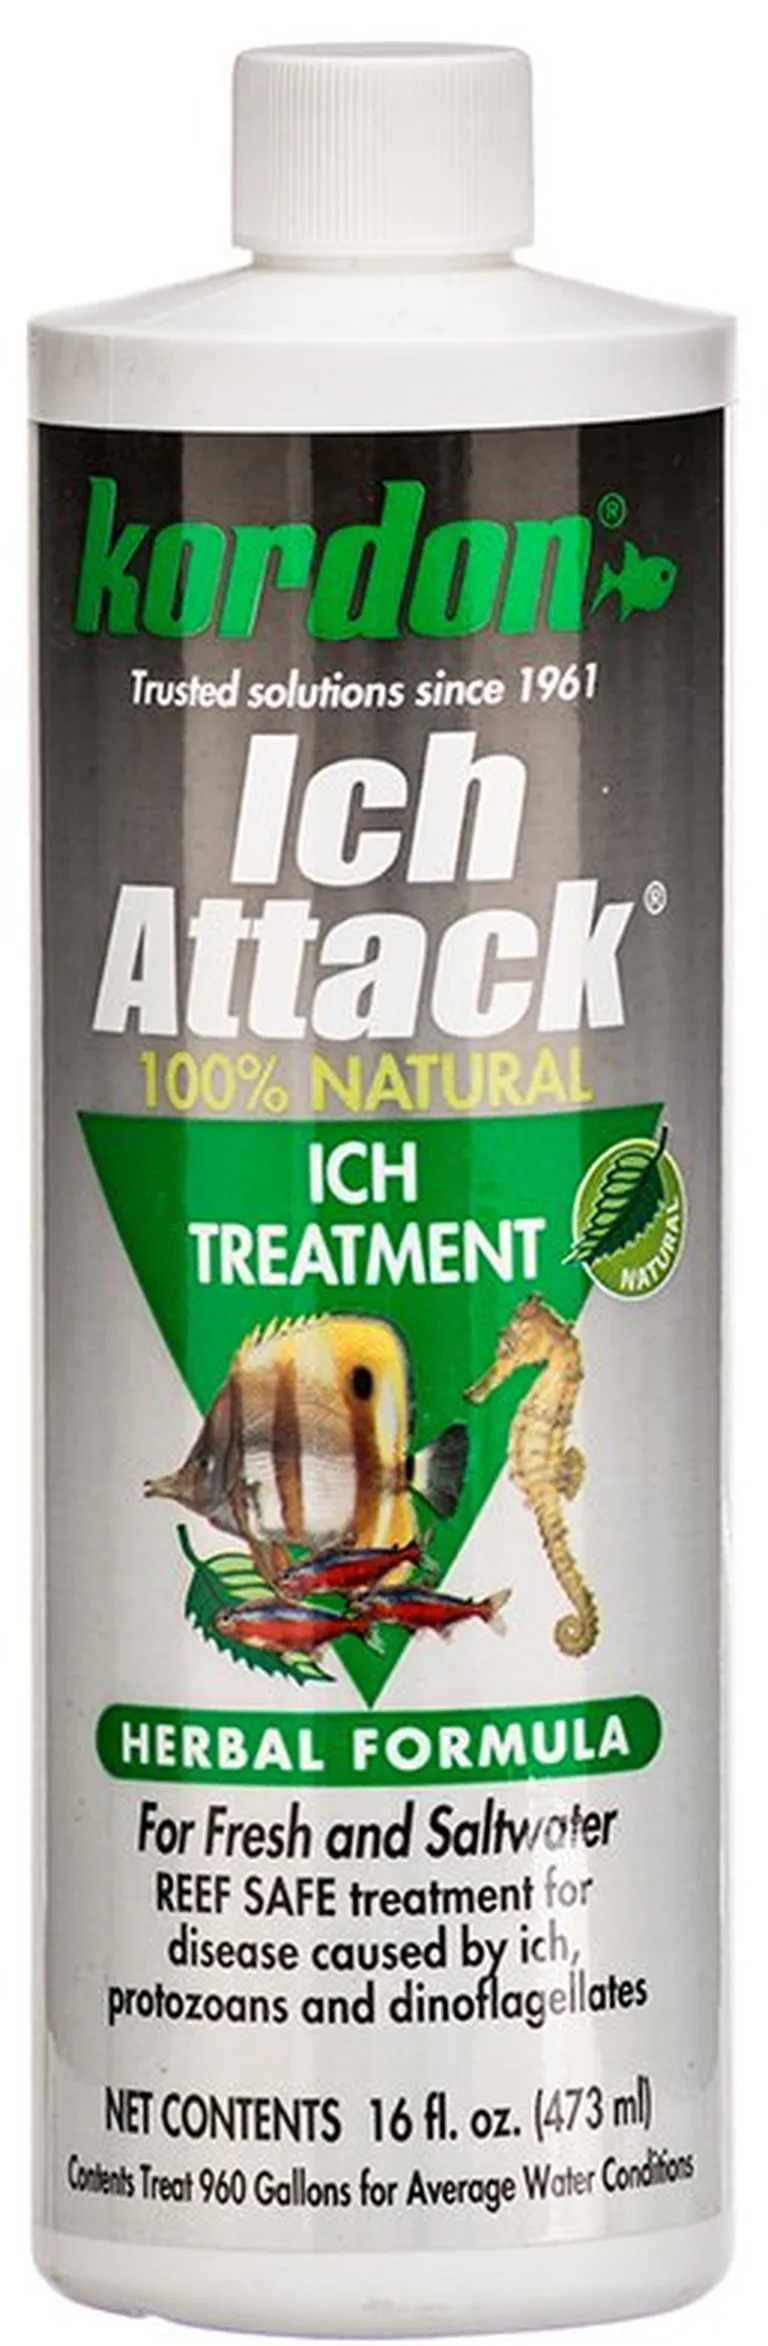 Kordon Ich Attack Ich Treatment Herbal Formula Photo 1